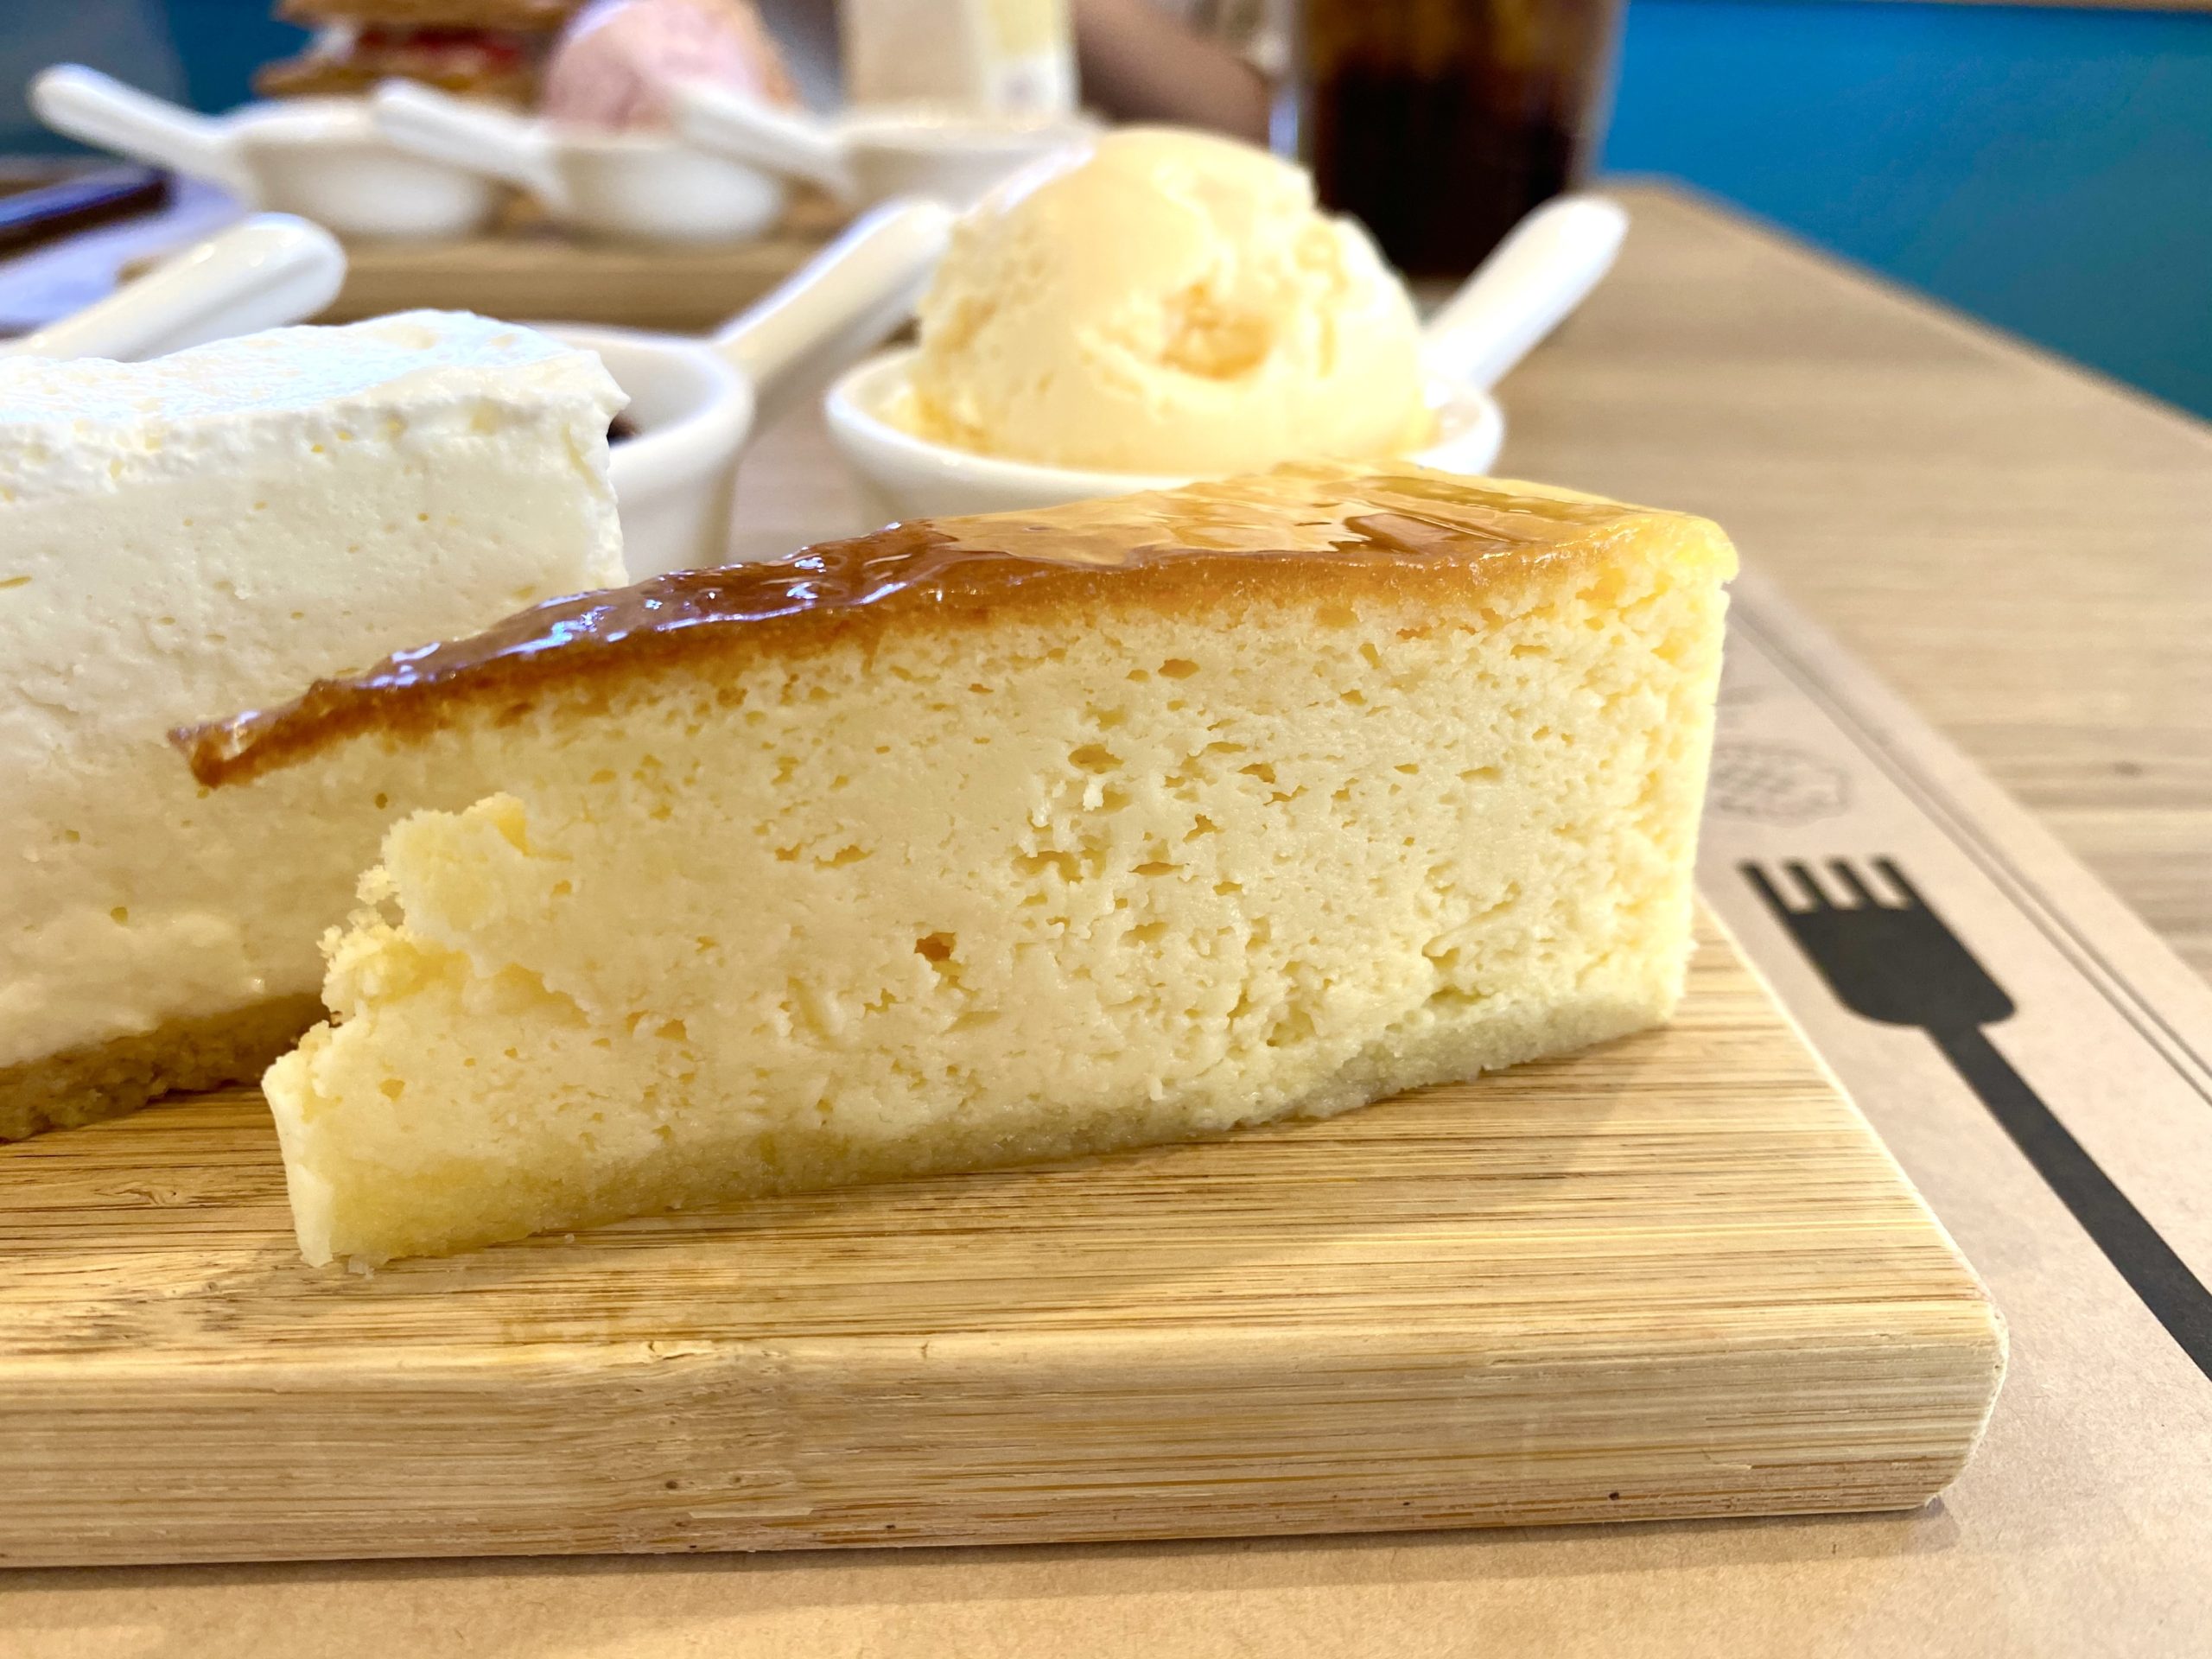 植田のカフェ Wonder はこだわりのチーズケーキを食べ比べできるお得なセットが人気の居心地のいいカフェ